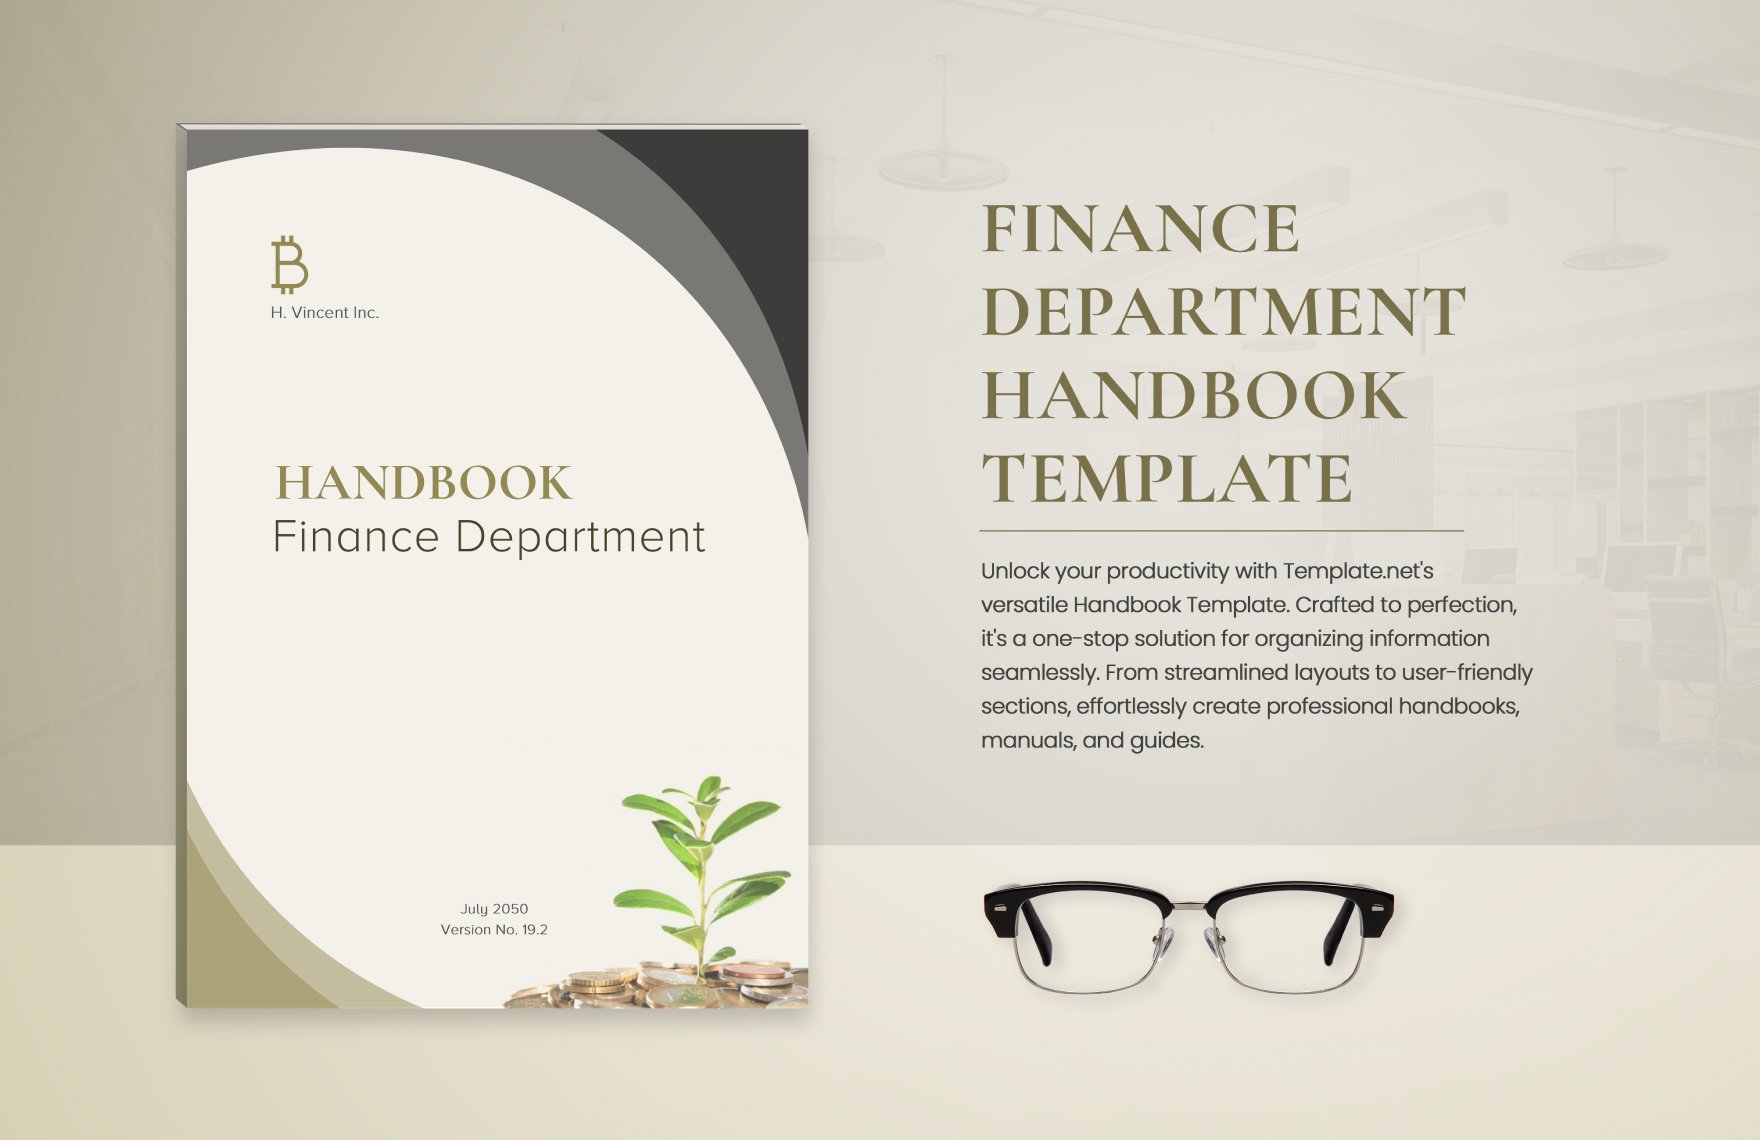 Free Finance Department Handbook Template